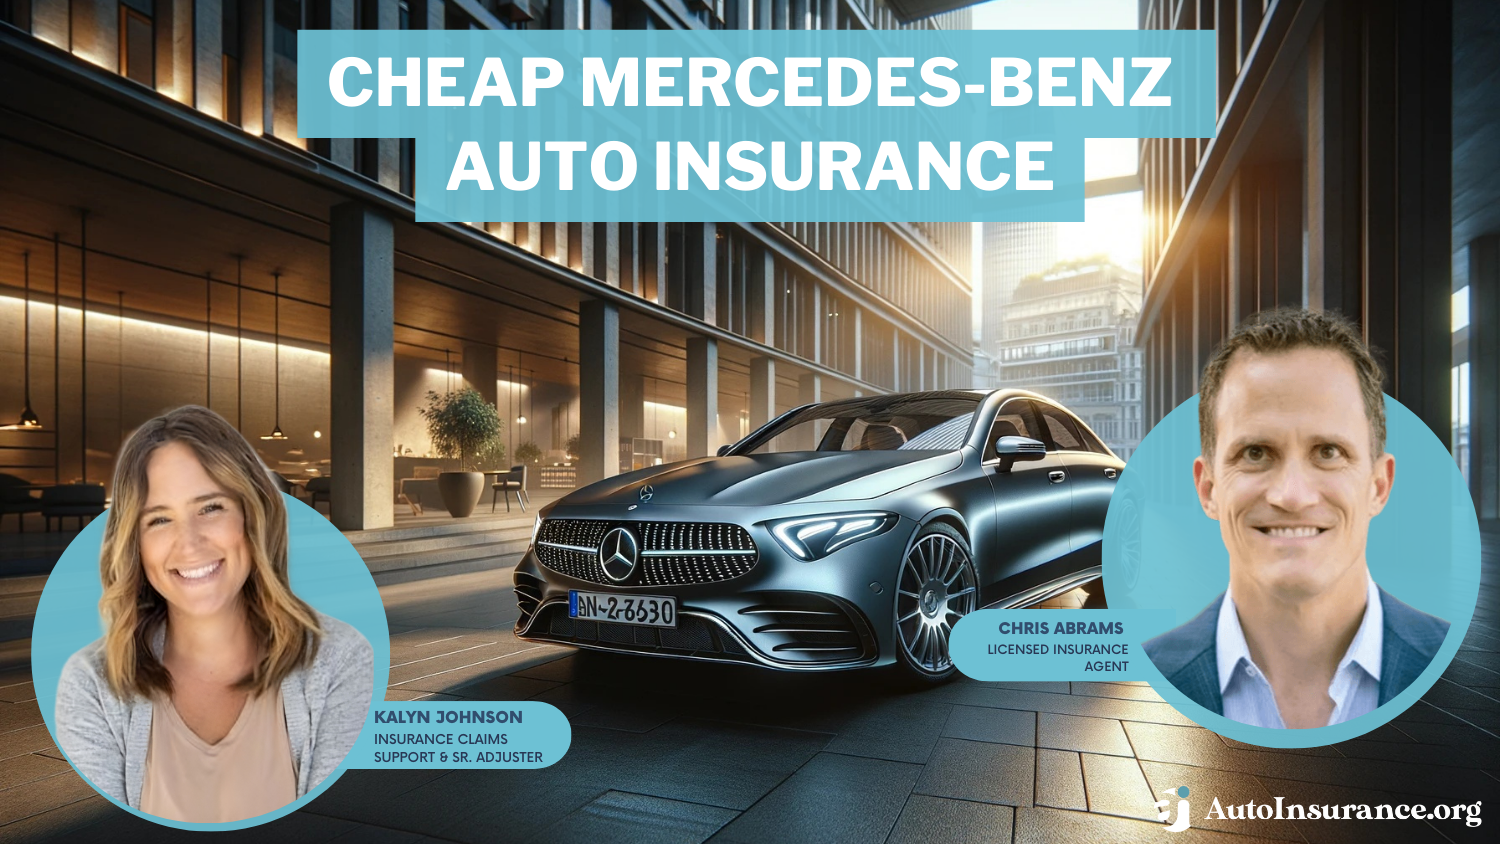 Allstate, Farmers, Geico, cheap Mercedes-Benz auto insurance